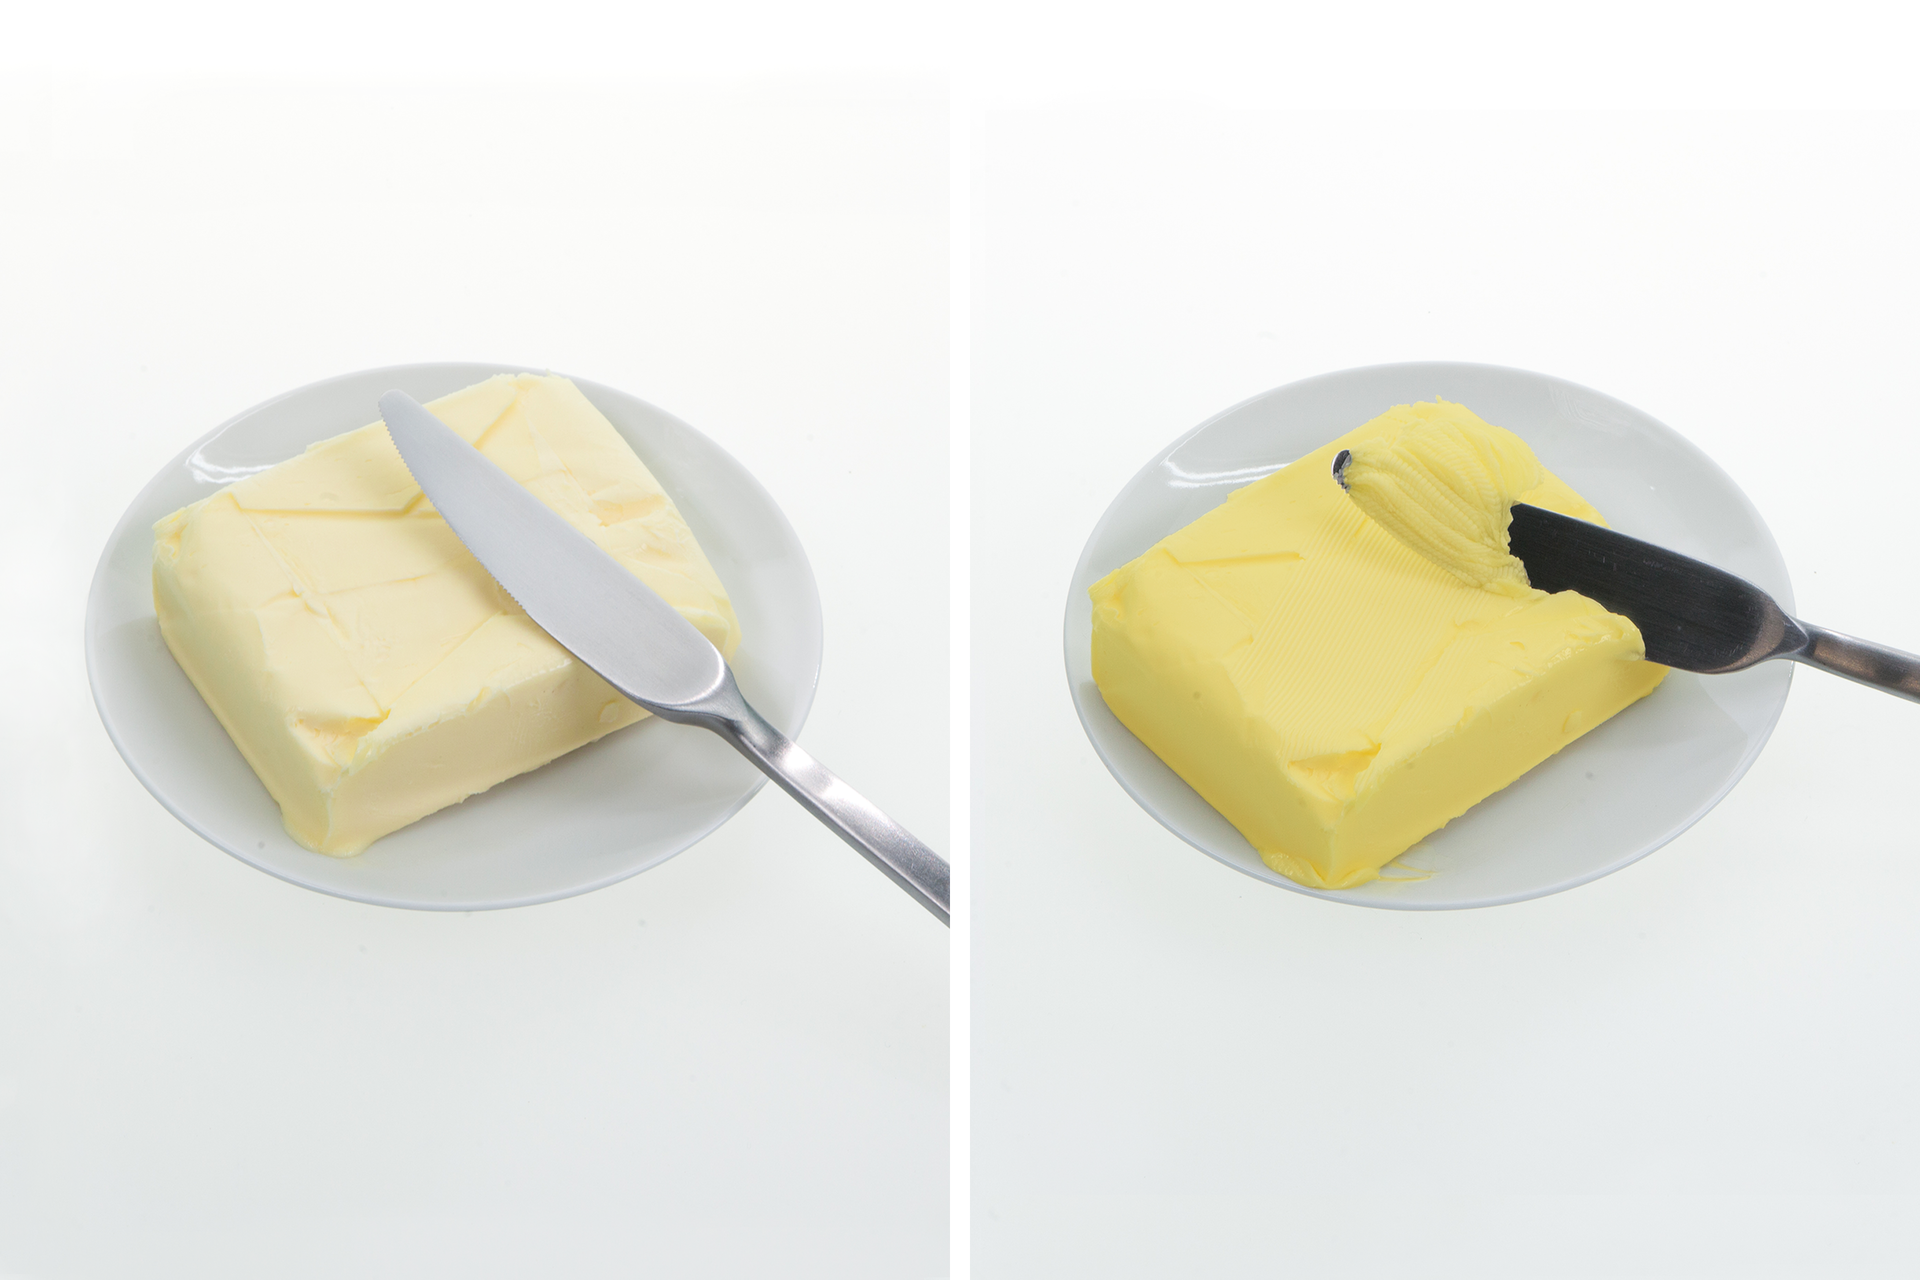 Kolaż dwóch zdjęć. Na zdjęciu po lewej stronie znajduje się biały talerz, na którym leży kostka masła w kolorze bladożółtym, a na niej oparty jest srebrny nóż. Na zdjęciu po prawej stronie również znajduje się biały talerz, na którym leży kostka zjełczałego masła. Świadczy o tym jej barwa, ponieważ w porównaniu z masłem po lewej stronie, masło na zdjęciu po prawej stronie jest ciemniejsze i żółty kolor jest bardziej intensywny. Z prawej strony kostki znajduje się srebrny nóż, którym nabierana jest porcja masła.